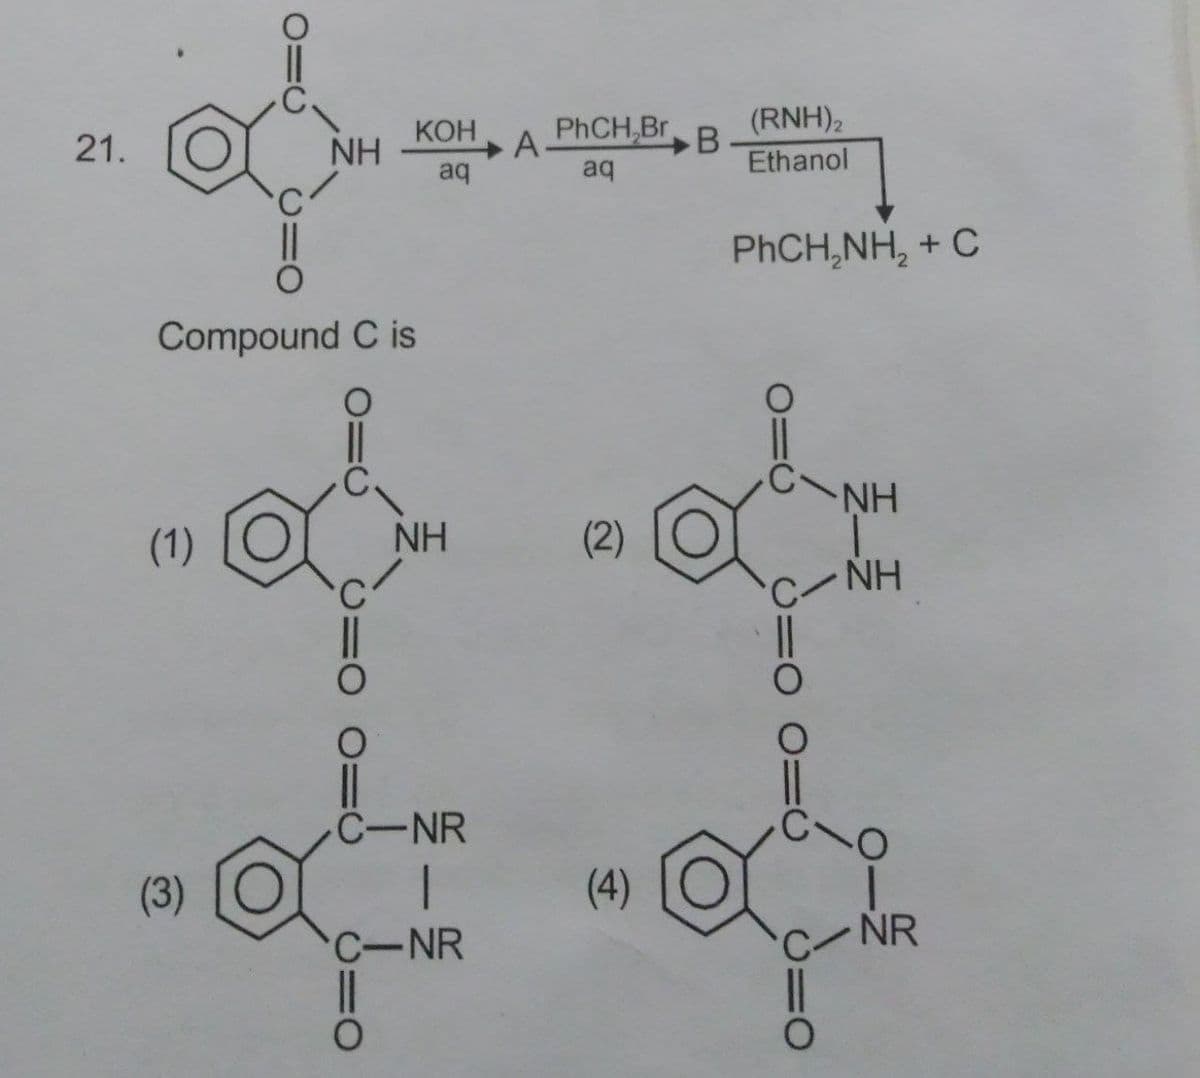 (RNH),
B
Ethanol
21.
NH
КОН
PHCH,Br
aq
aq
PHCH,NH, + C
Compound C is
CNH
(1)
NH
(2)
C-NH
C-NR
(3)
(4)
C-NR
NR
三一三
C=O 0=U
C=O
